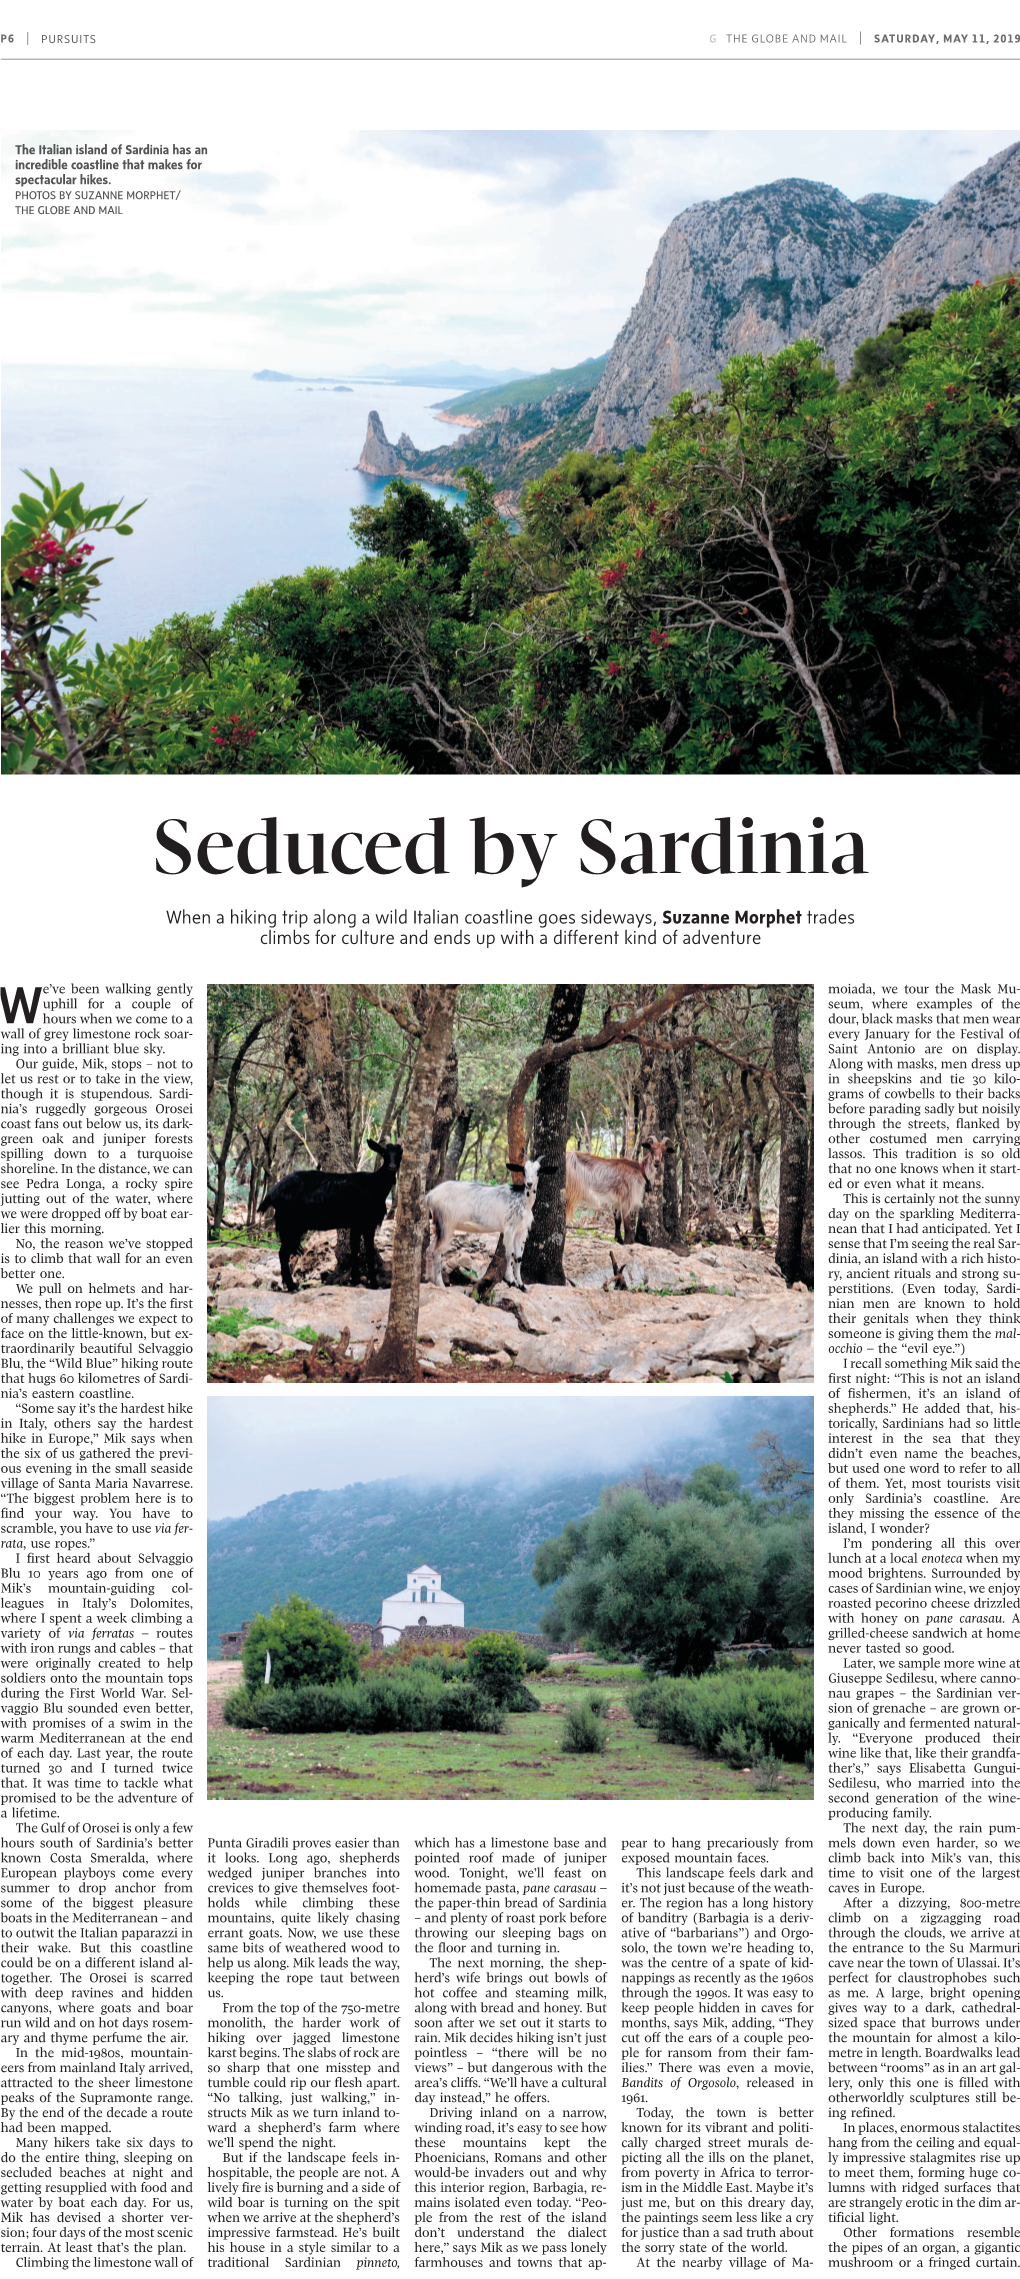 Seduced by Sardinia